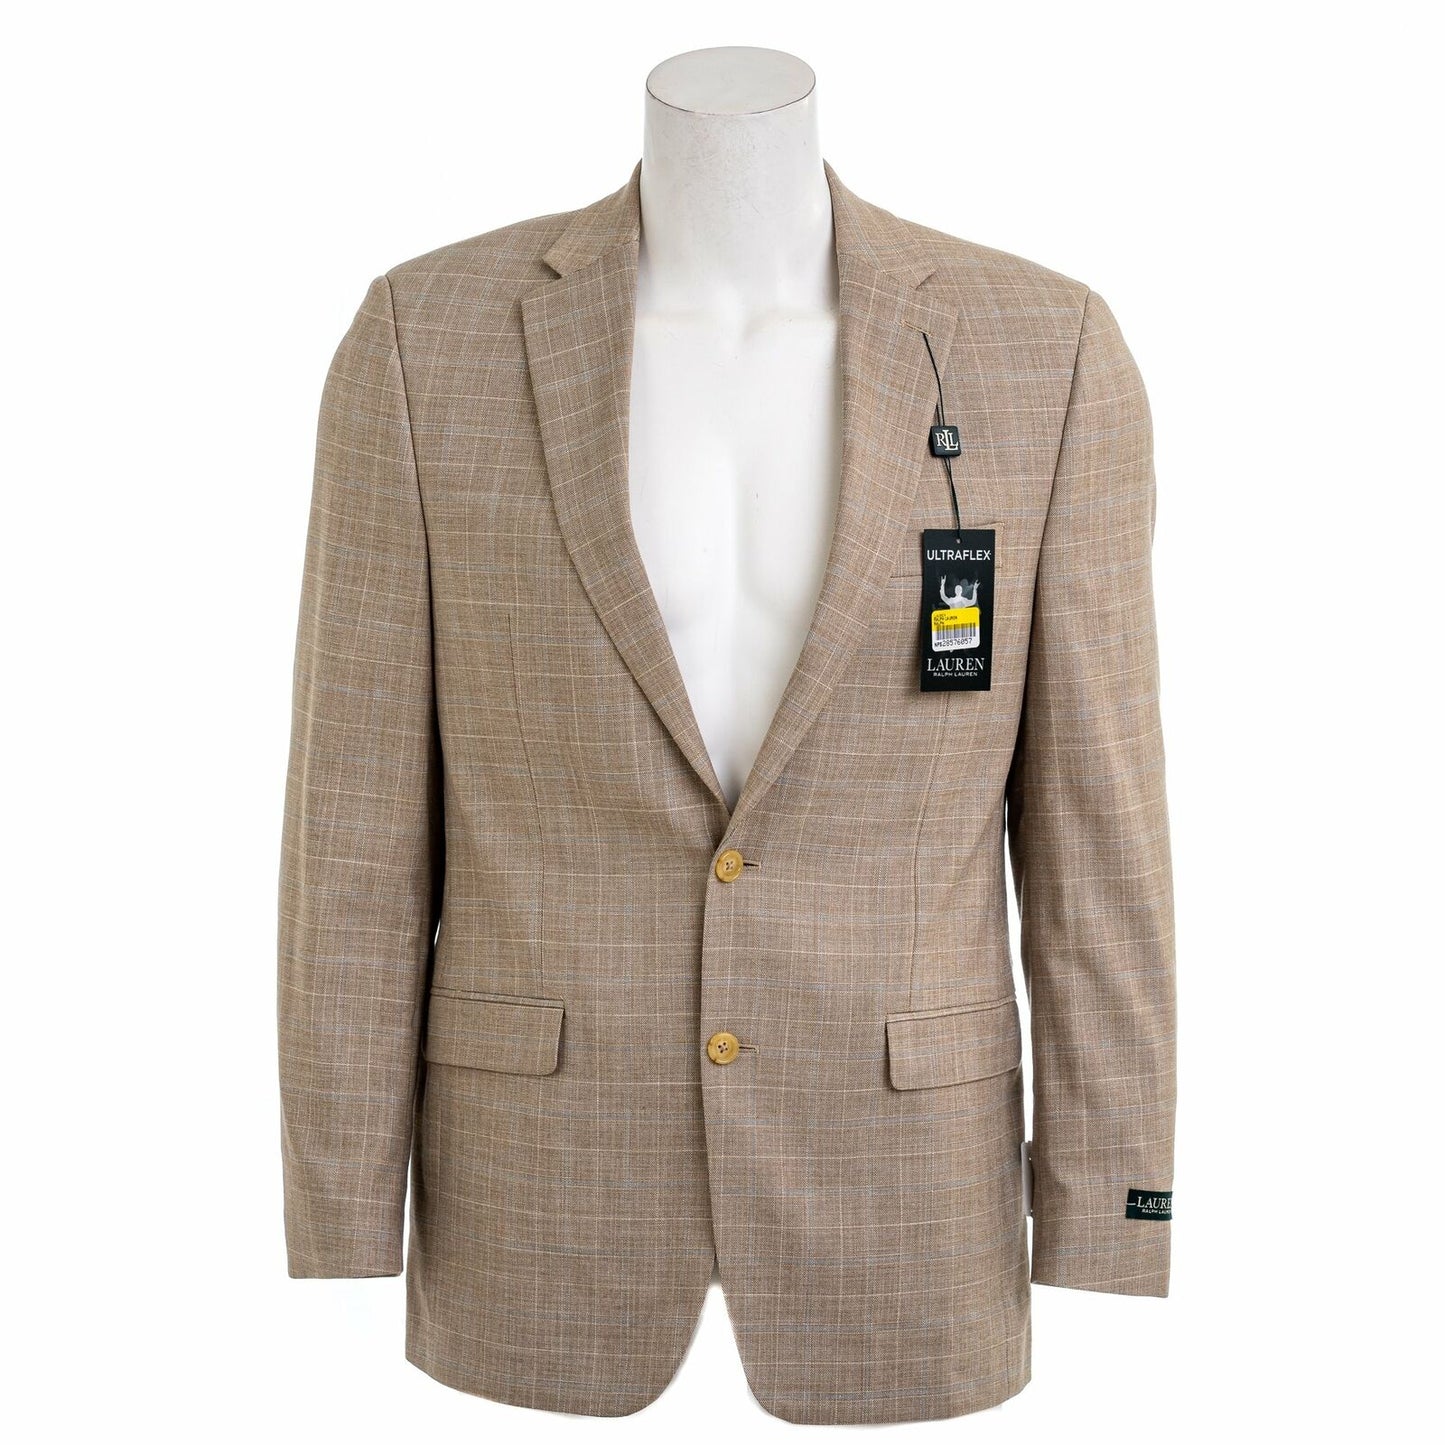 LAUREN RALPH LAUREN Men's Lexington Ultra Flex Suit Jacket Blazer  Color Tan Size 36R